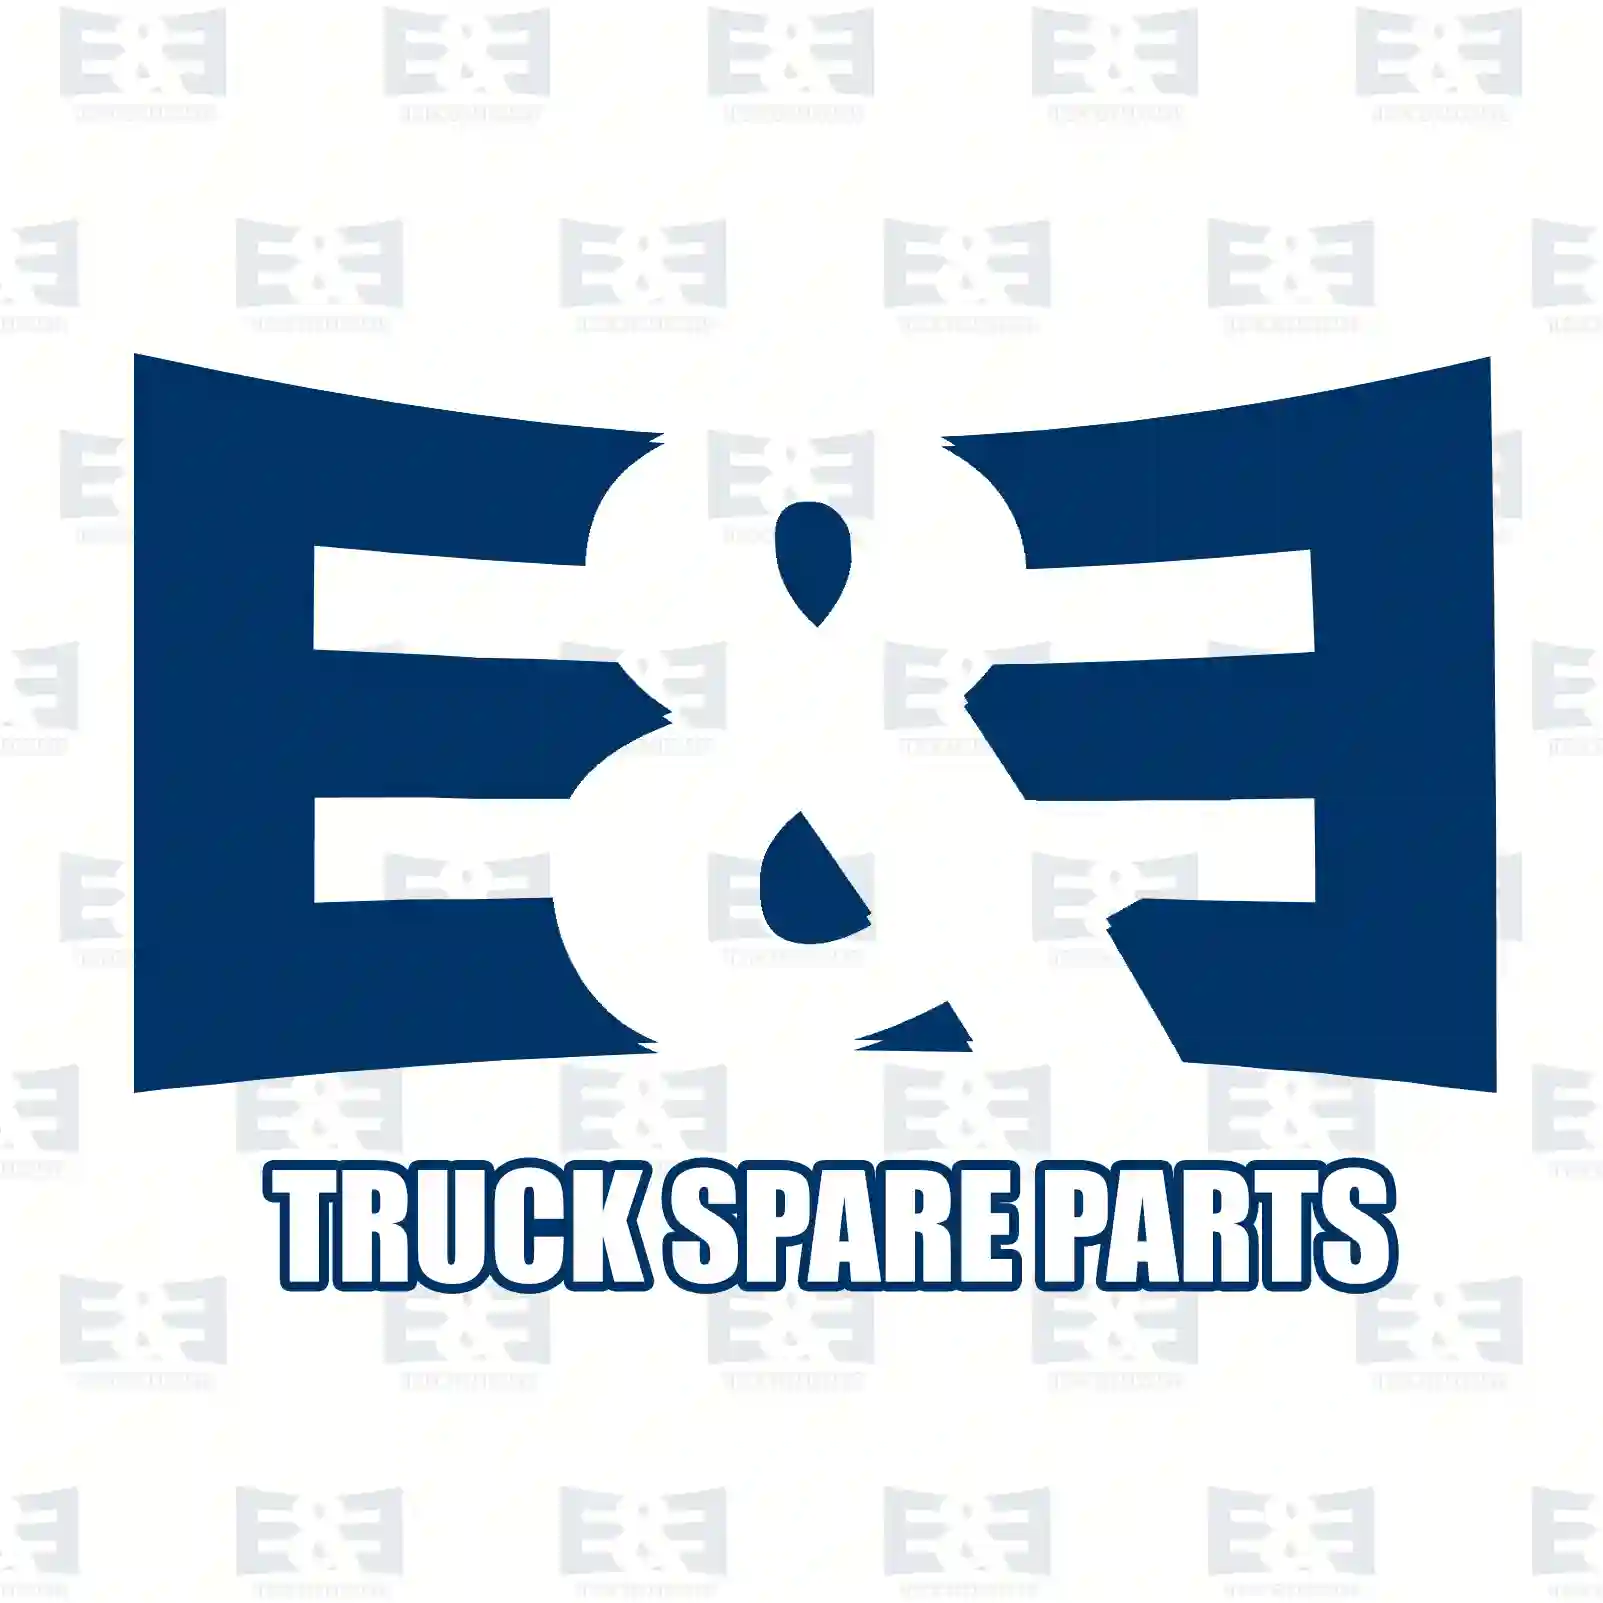 Oil seal, 2E2279110, 0002157880, 6110262, 09981309, 42486103, 42493153, 9981309, 0039973447, 0039976847, 3049970847, 05105351, 5000132770, 215101360, 6876132, ZG02723-0008 ||  2E2279110 E&E Truck Spare Parts | Truck Spare Parts, Auotomotive Spare Parts Oil seal, 2E2279110, 0002157880, 6110262, 09981309, 42486103, 42493153, 9981309, 0039973447, 0039976847, 3049970847, 05105351, 5000132770, 215101360, 6876132, ZG02723-0008 ||  2E2279110 E&E Truck Spare Parts | Truck Spare Parts, Auotomotive Spare Parts